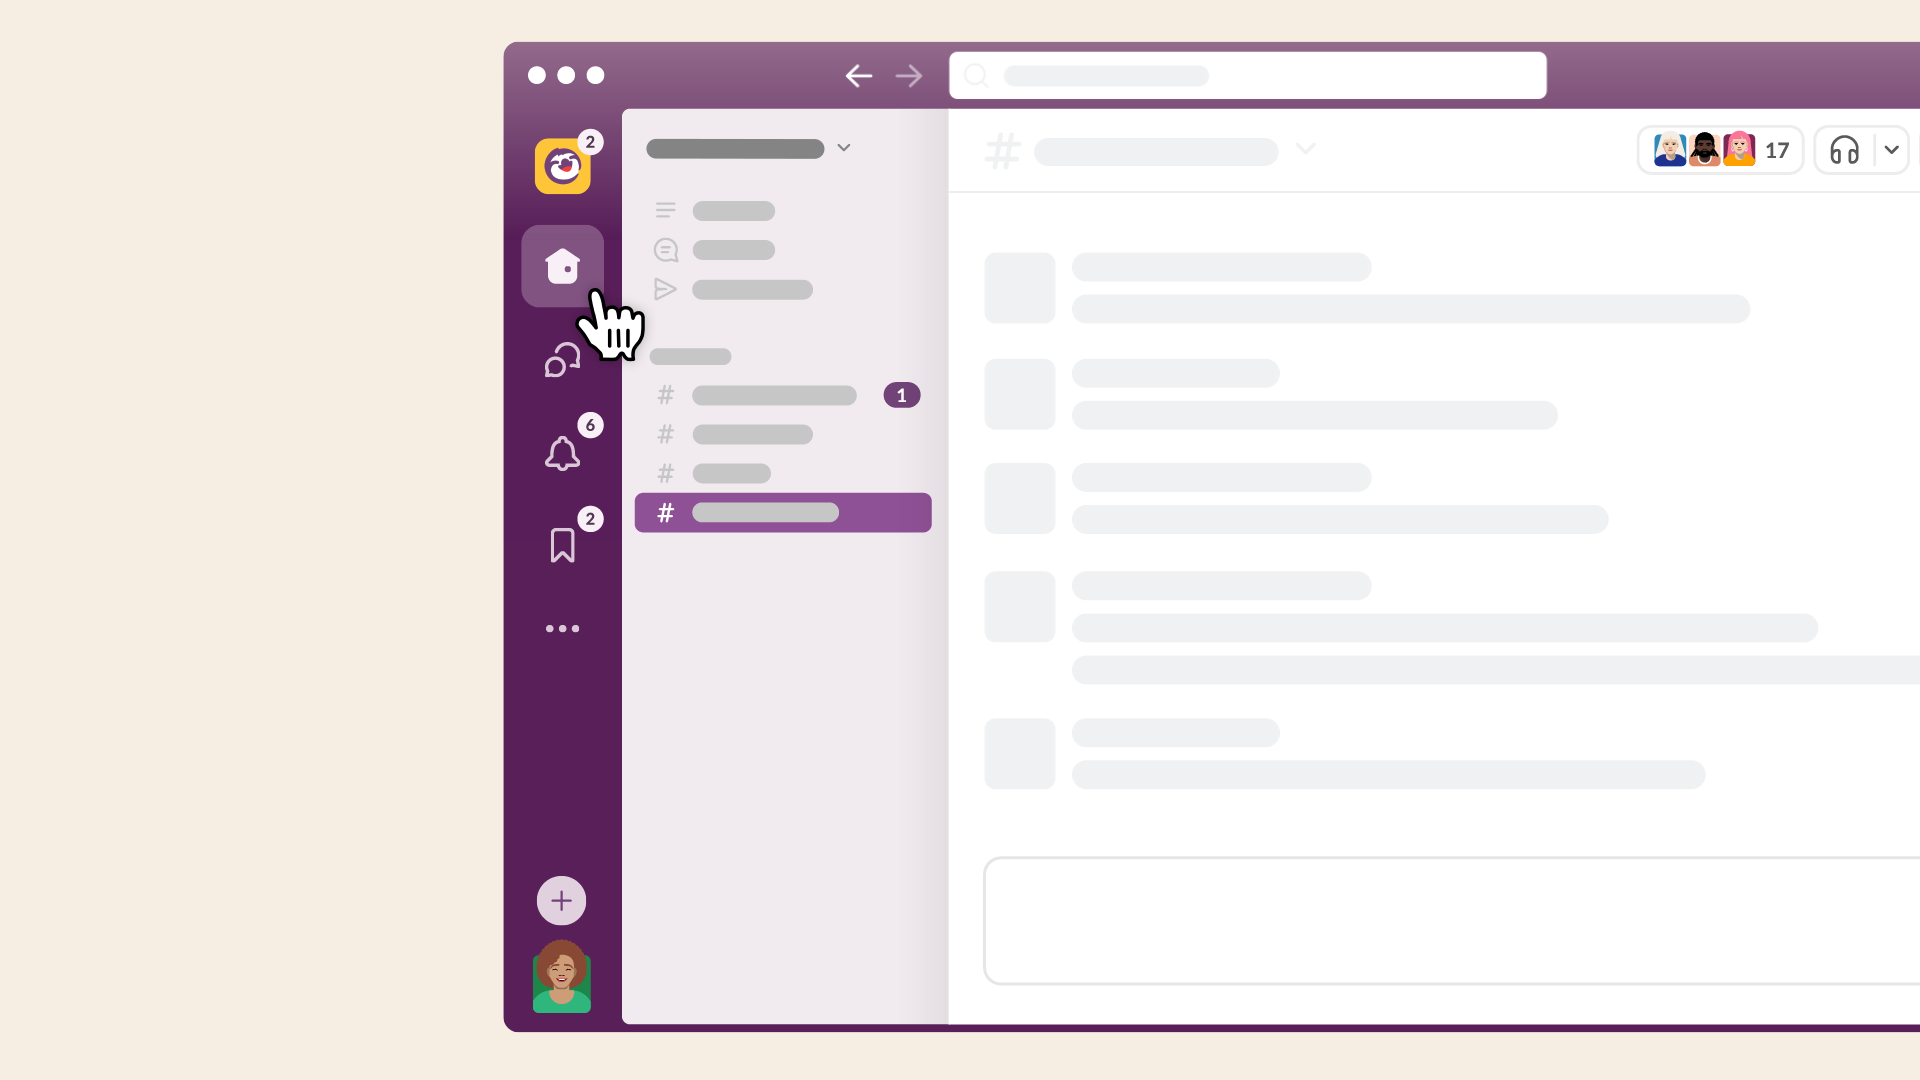 Ansicht der Slack-Benutzeroberfläche, u. a. mit der Suchleiste, dem Plus-Button und dem Profilbild